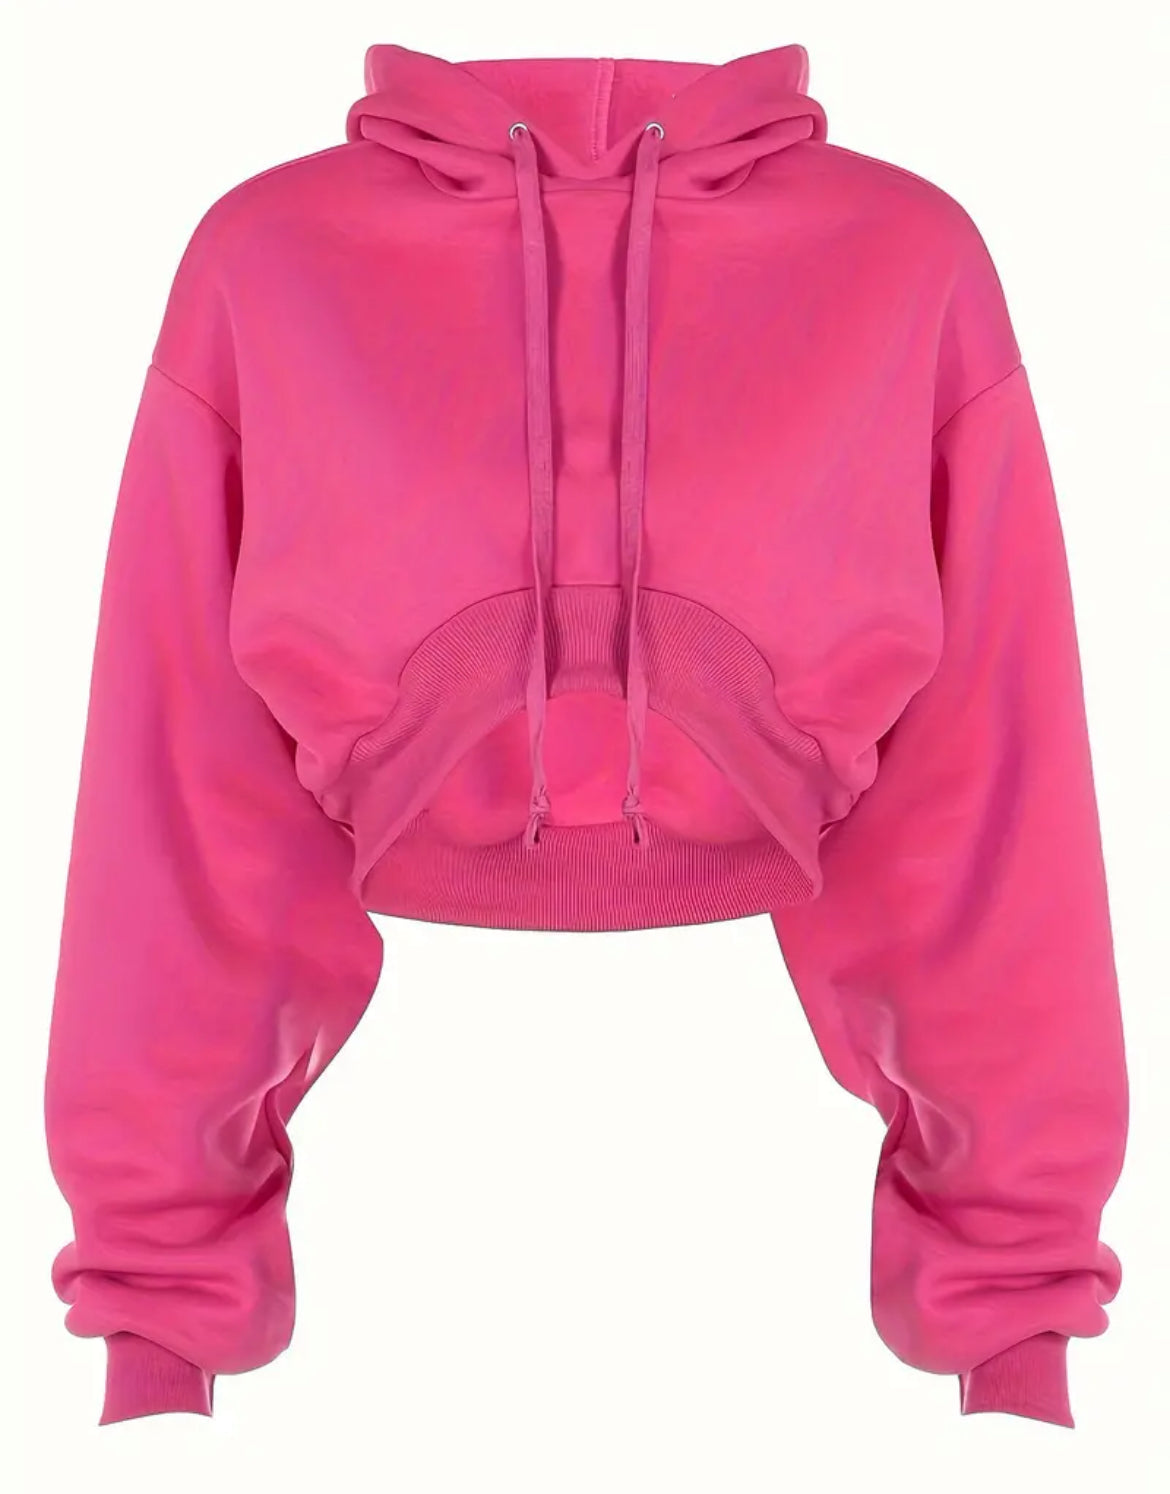 Solid Hot Pink Drawstring Crop Hoodie, Casual Long Sleeve Sweatshirt